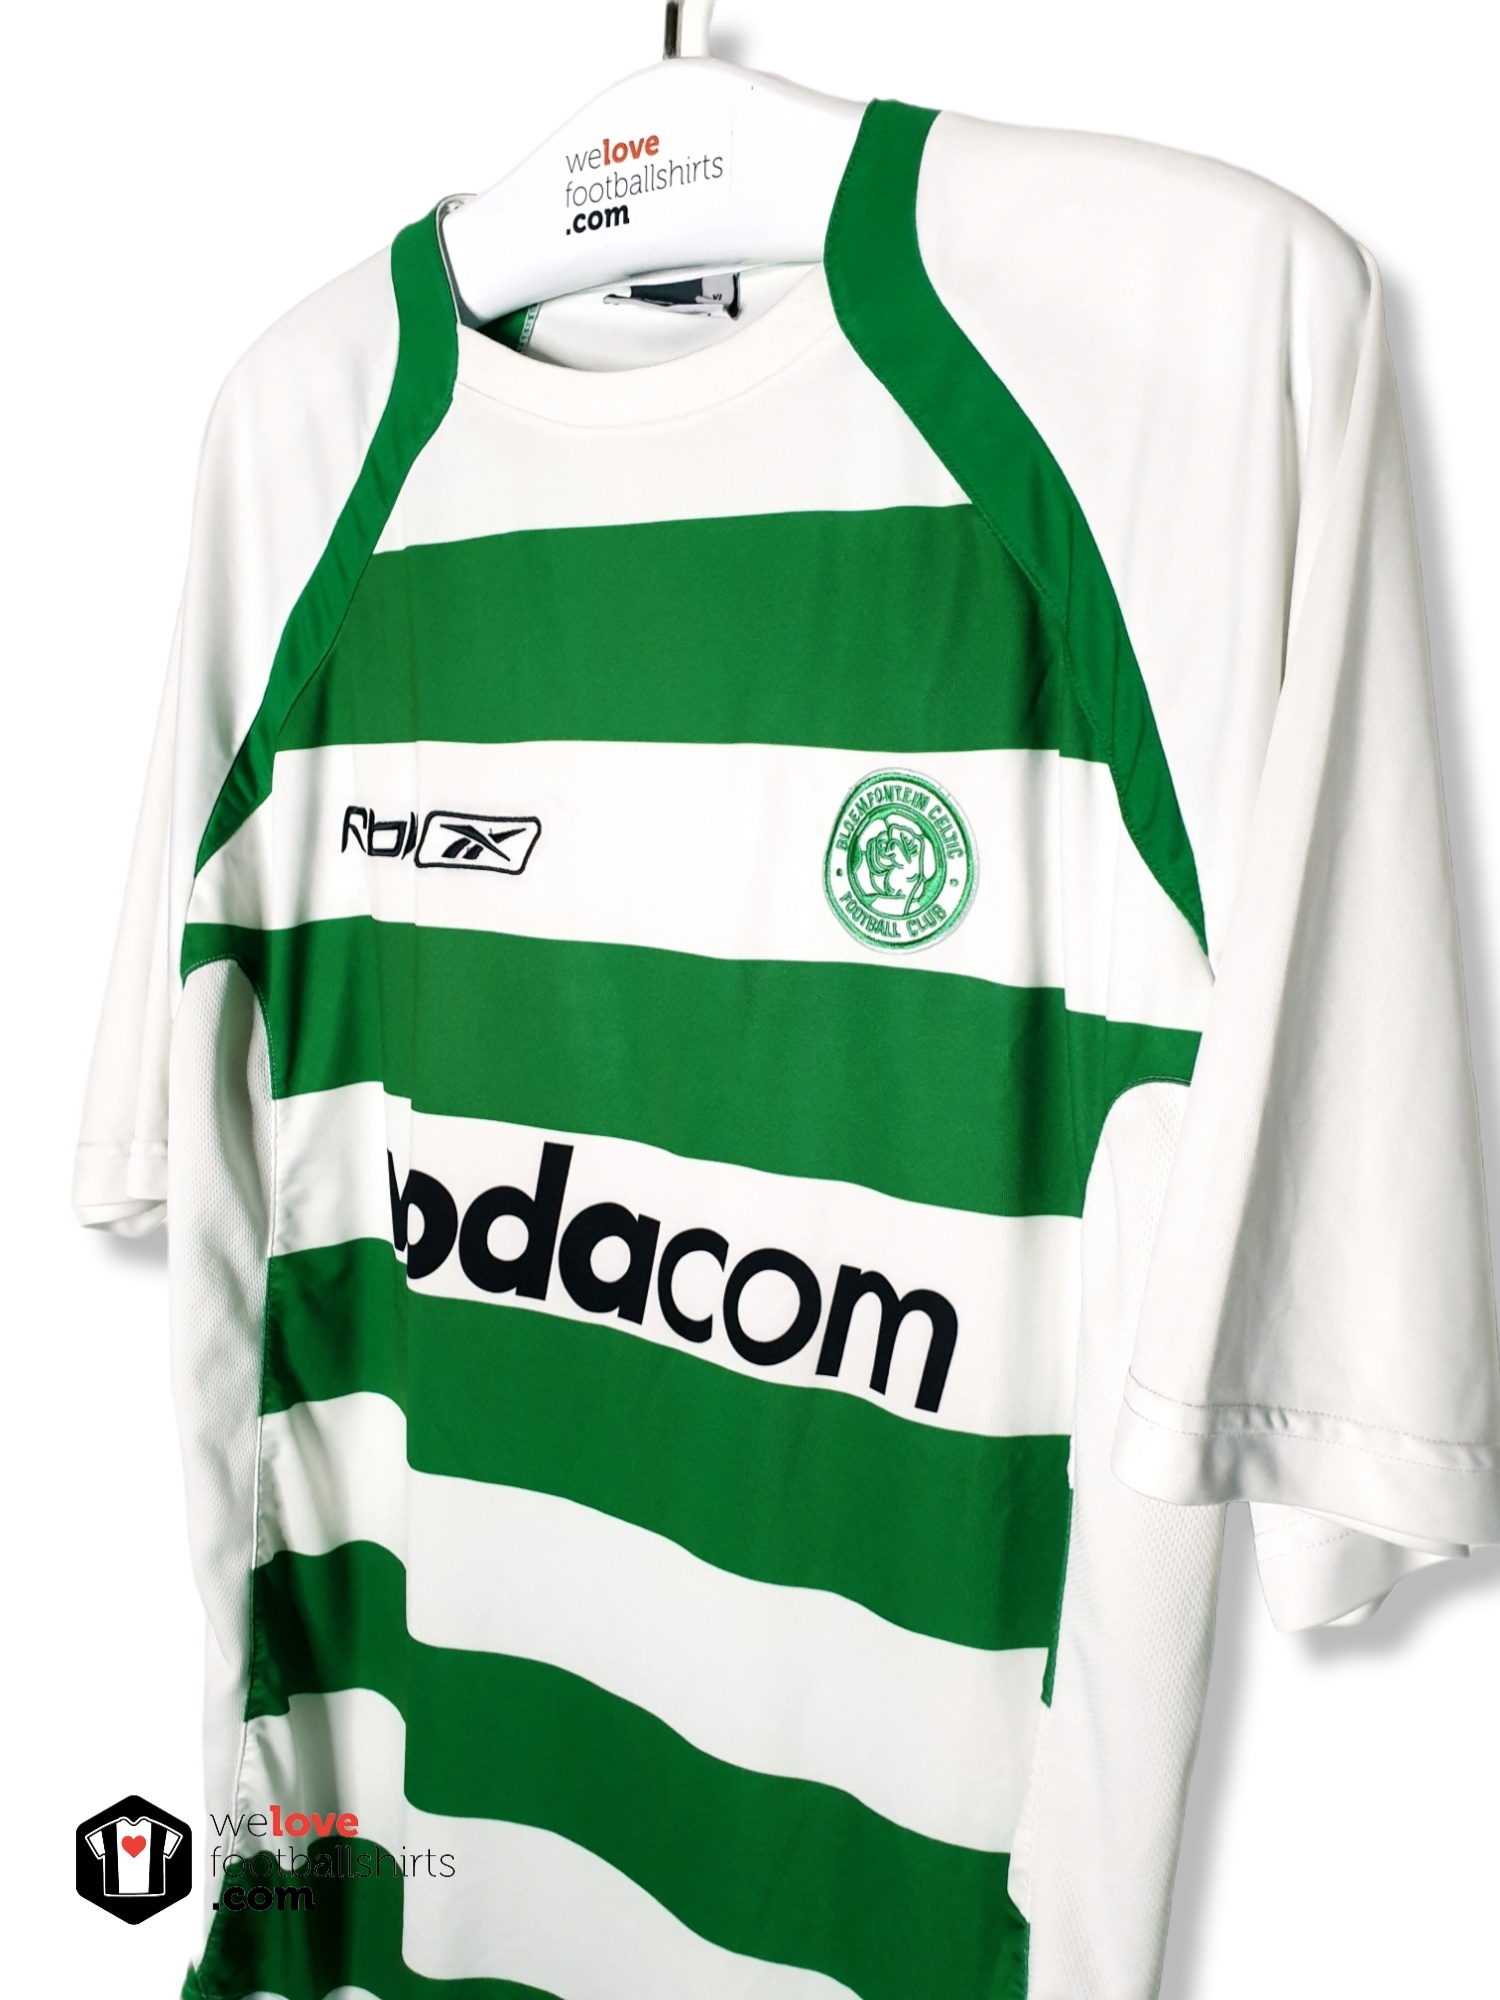 Bloemfontein Celtic Home football shirt 2006 - 2007.